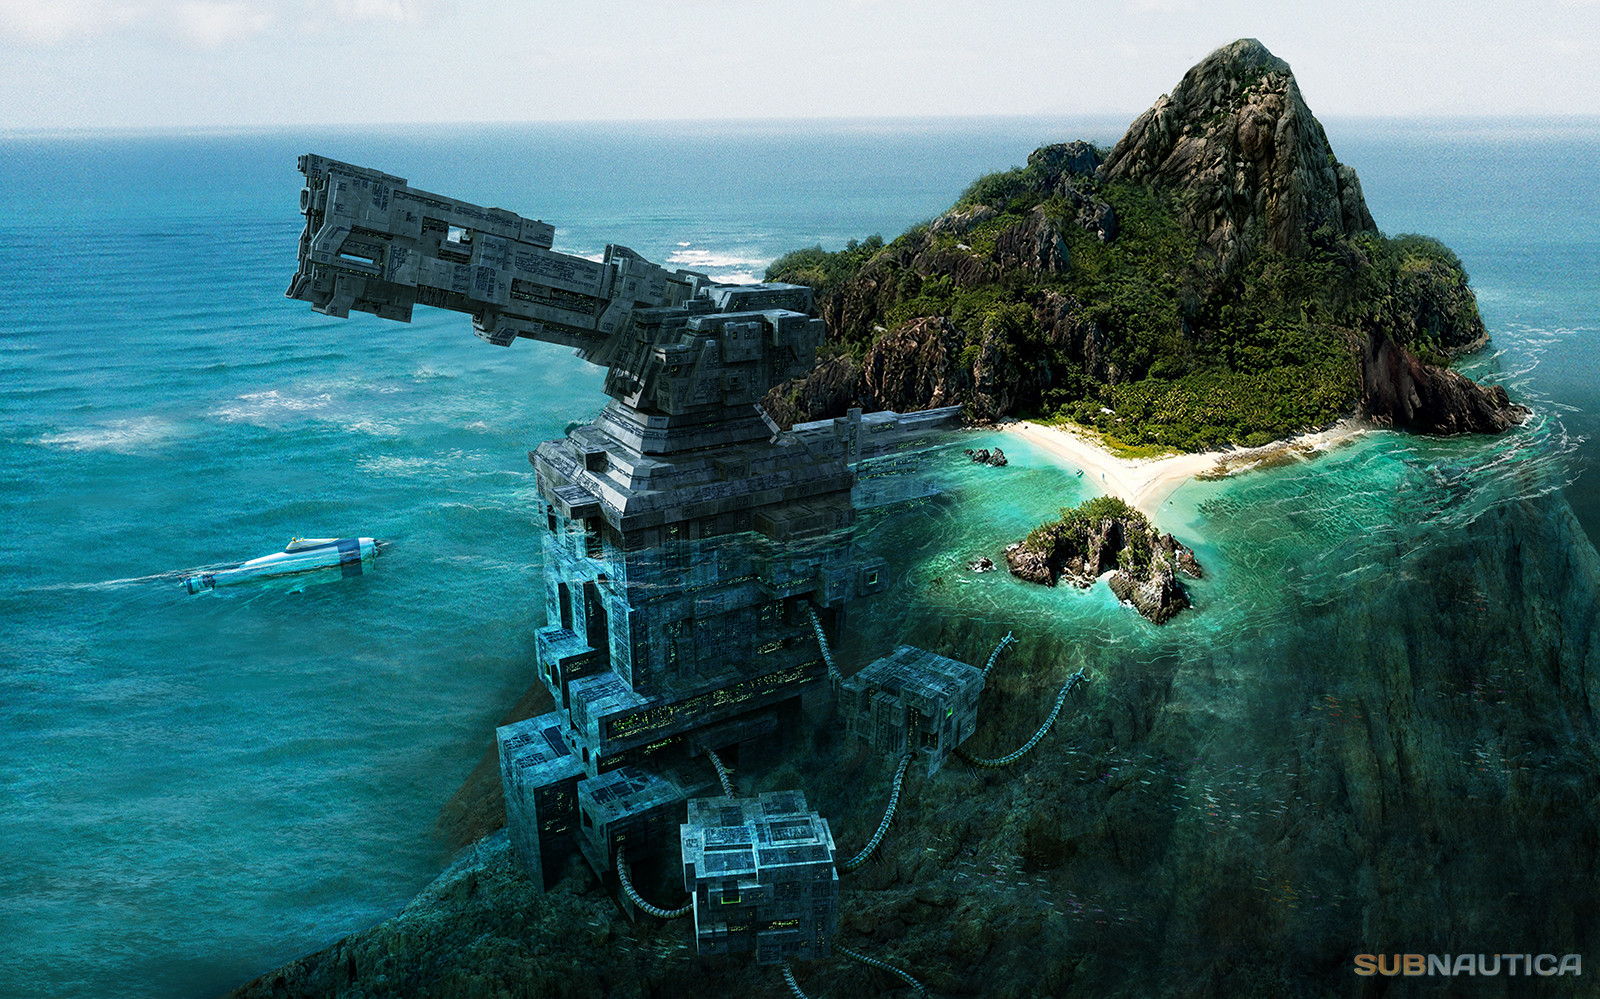 General 1600x999 subnautica artwork fantasy art futuristic video games sea underwater submarine island